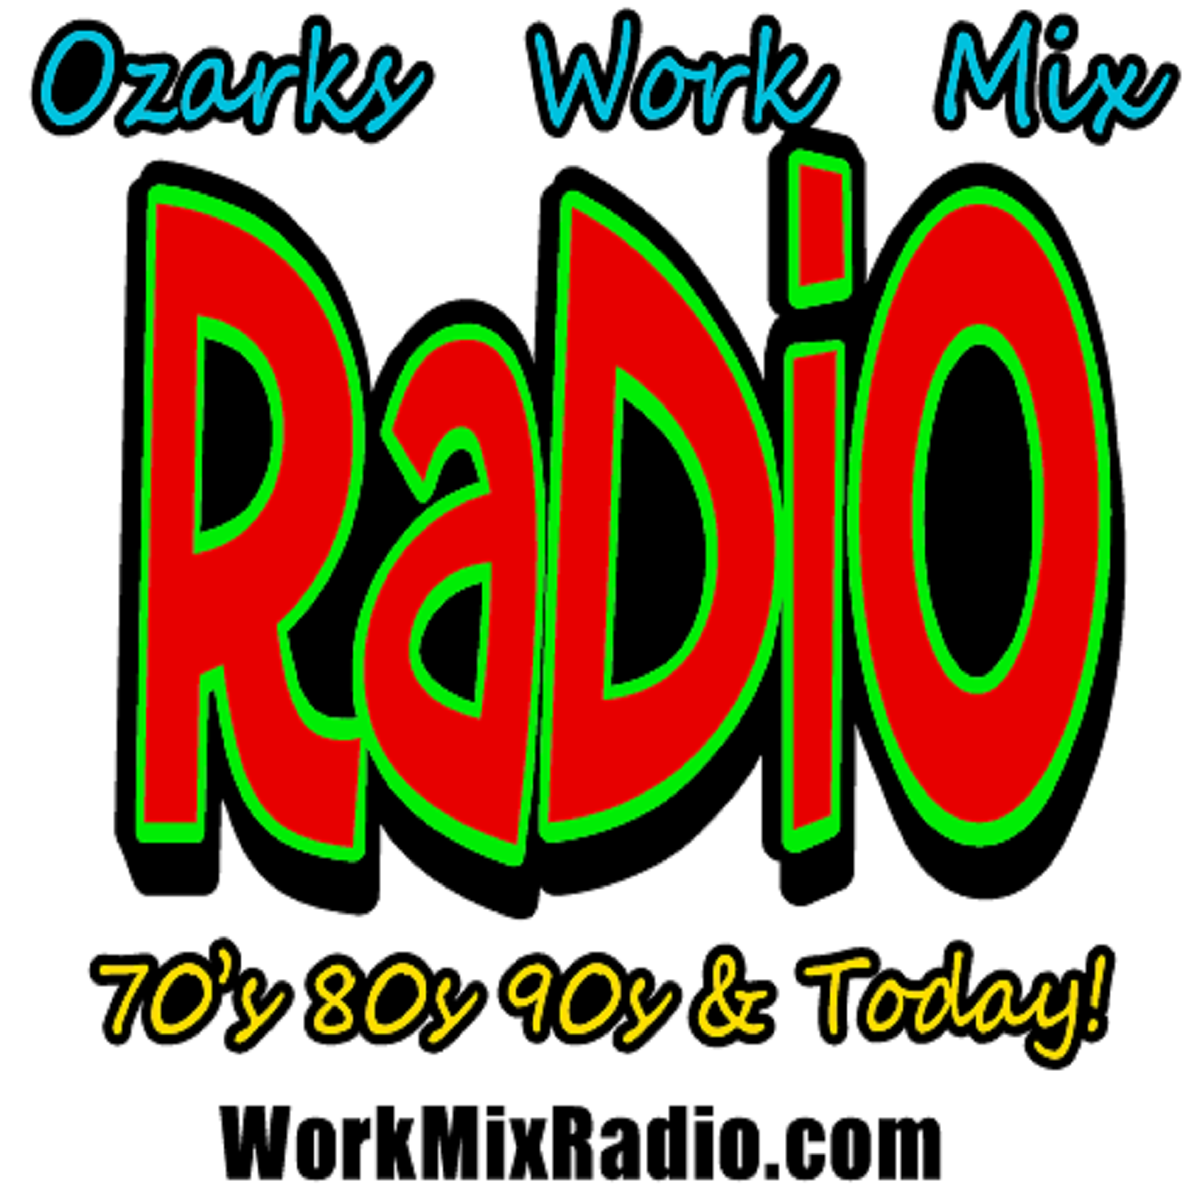 WorkMixRadio.com - Ozarks Work Mix